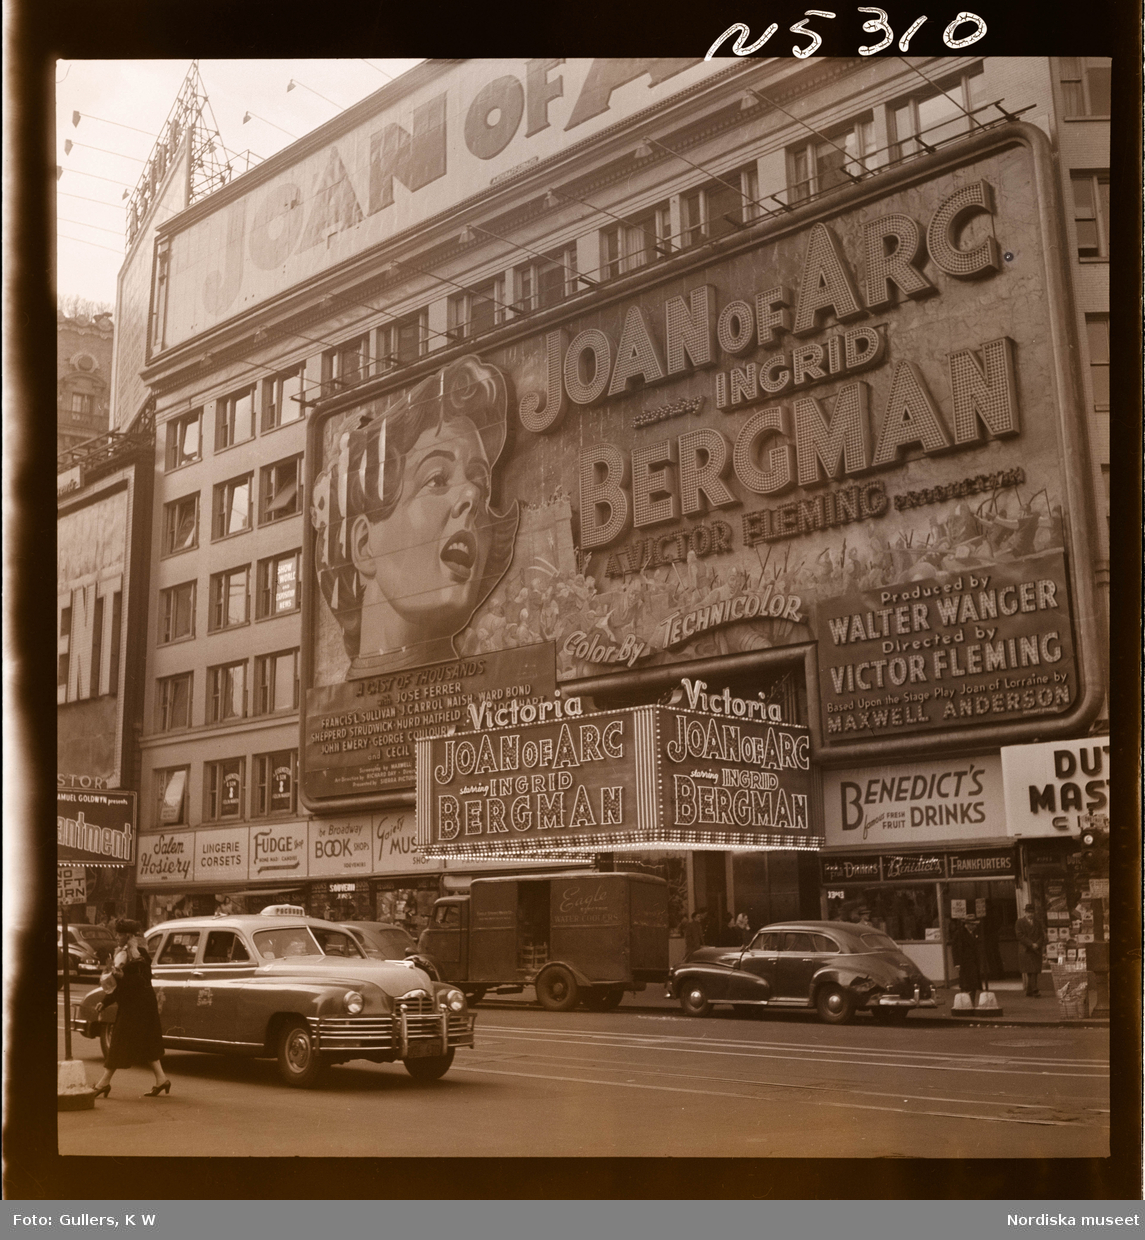 1690 New York allmänt (N.Y. Herald Tribune). Reklam/ annonsering på fasad för filmen "Joan of Arc" med Ingrid Bergman i huvudrollen.